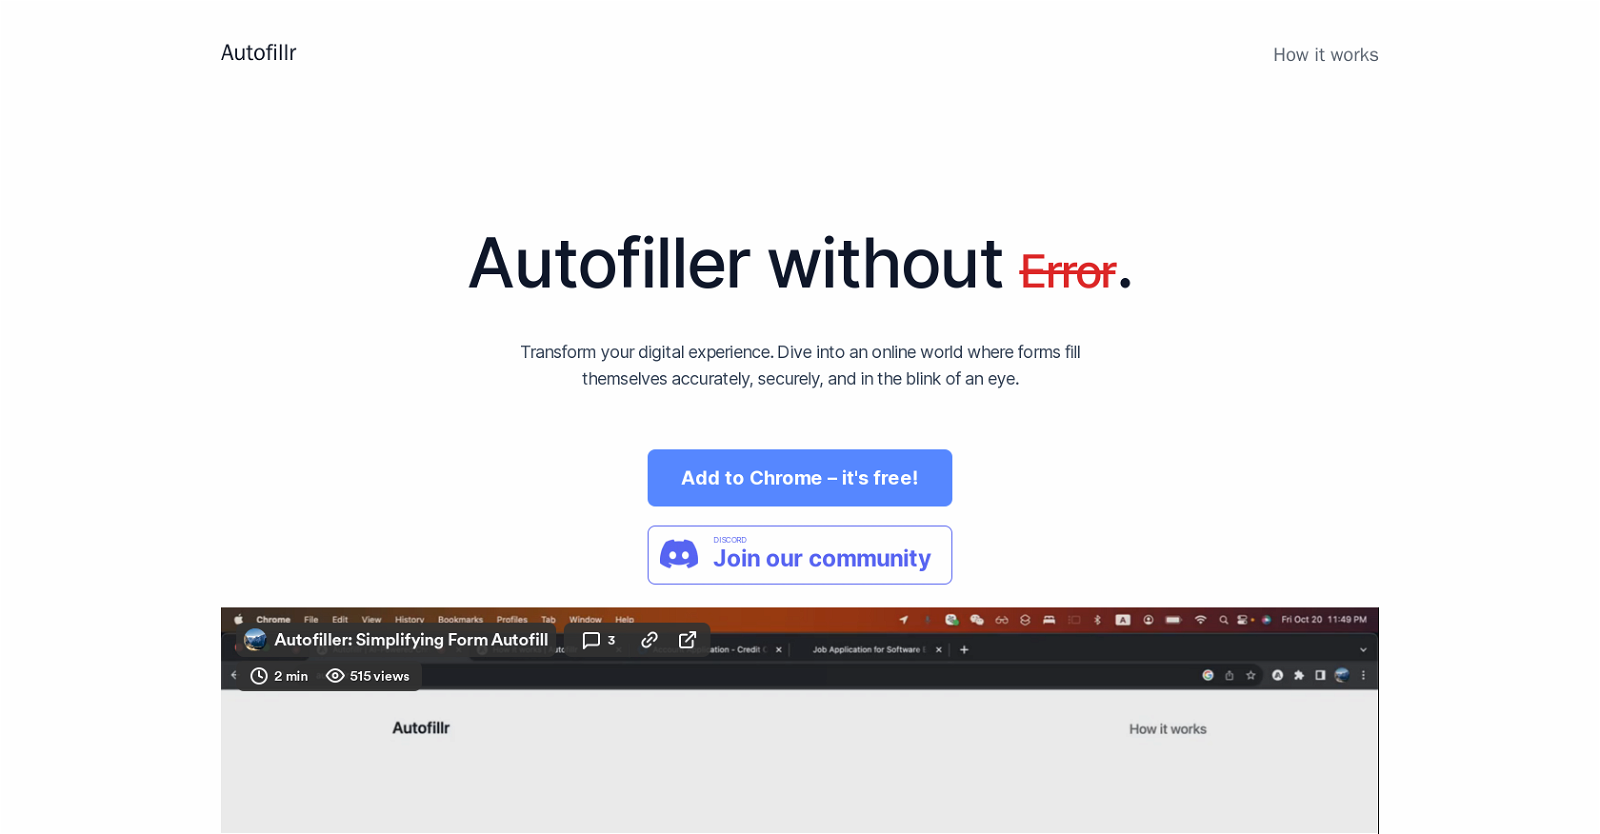 Autofillr website